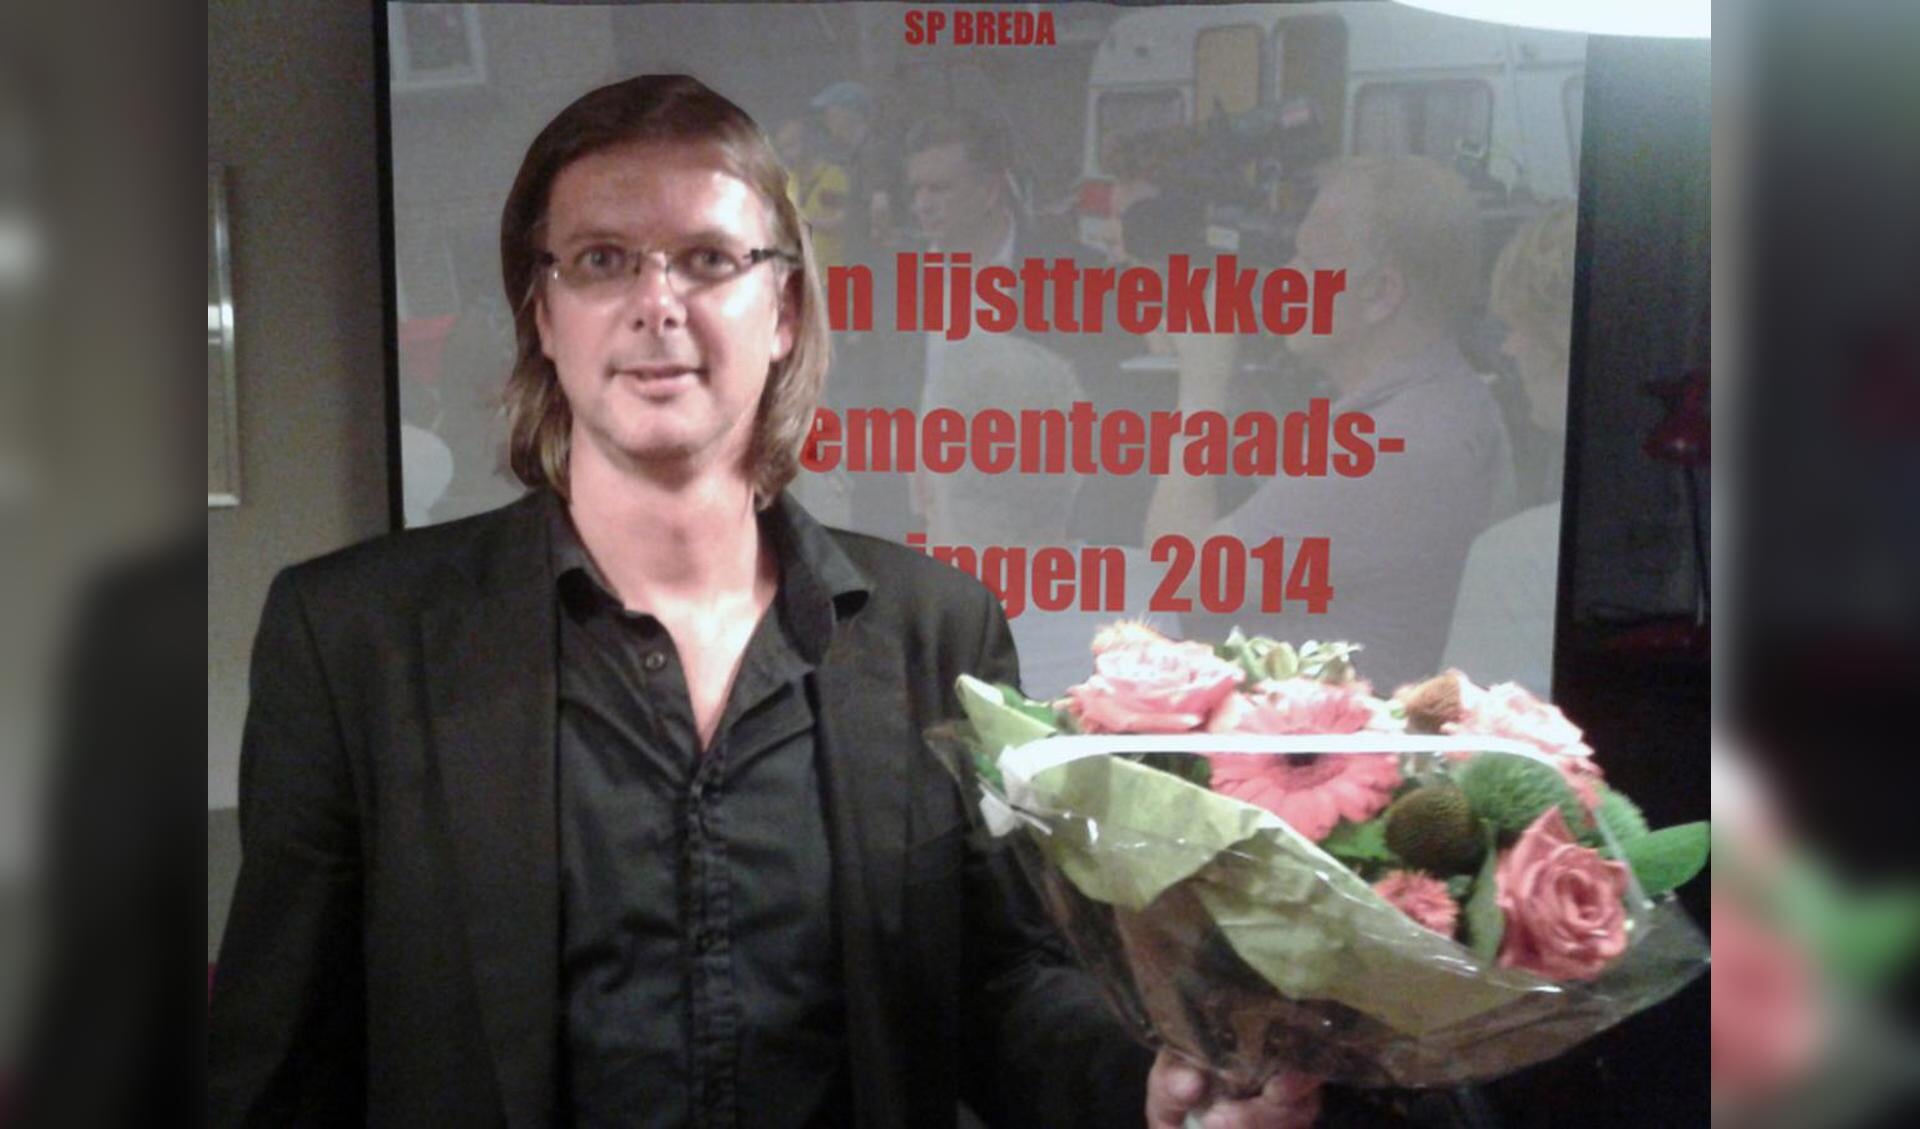 Patrick van Lunteren is gekozen als lijstrekker voor de gemeenteraadsverkiezingen 2014, namens de SP. foto SP